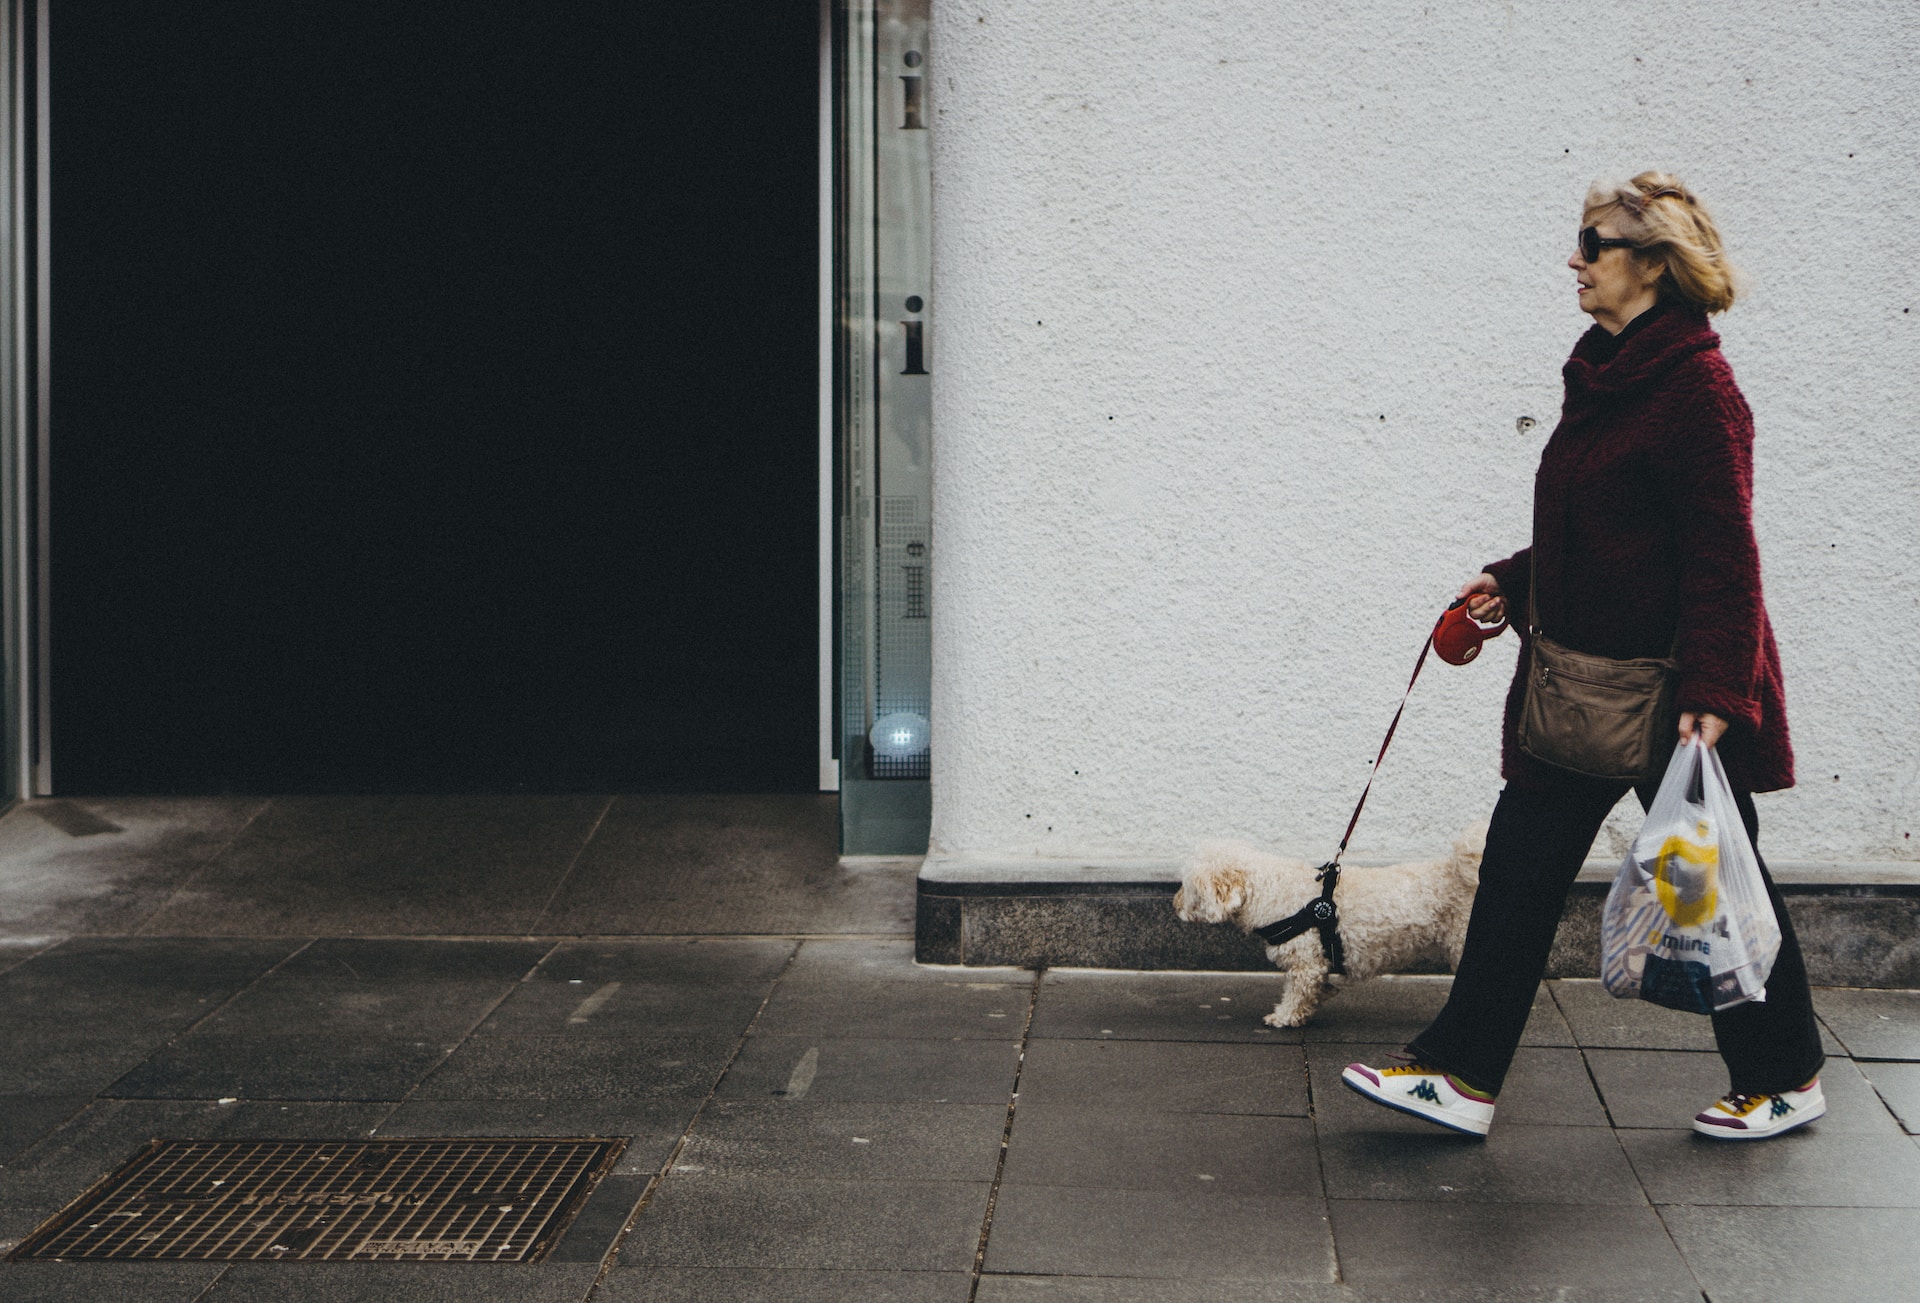 Elderly woman walking on sidewalk.